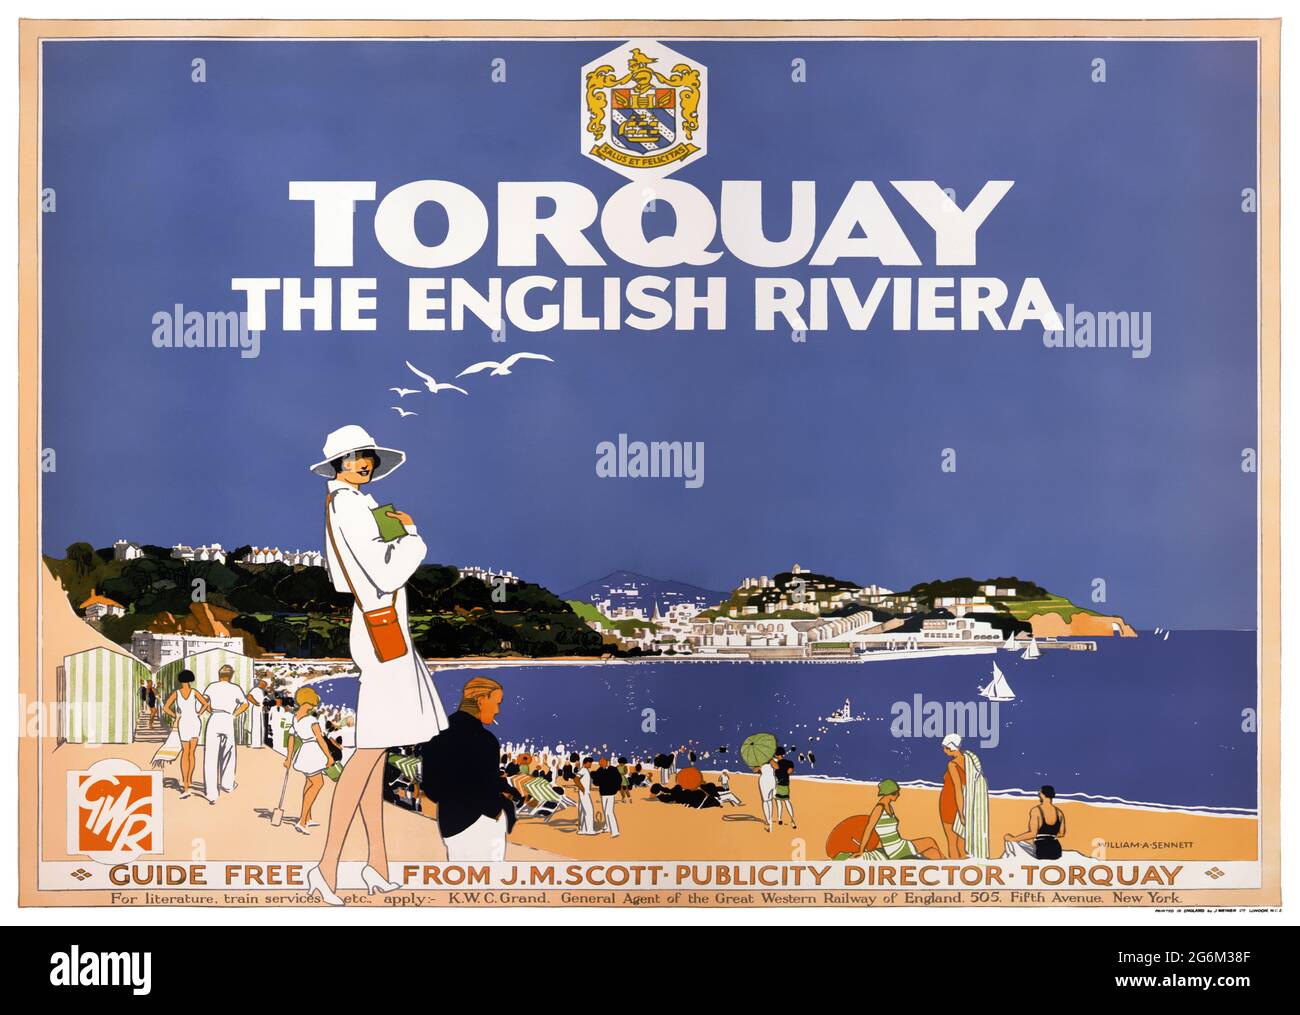 Torquay. The English Riviera von William A. Sennet (Daten unbekannt). Restauriertes Vintage-Poster, das in den 1920er Jahren in Großbritannien veröffentlicht wurde. Stockfoto